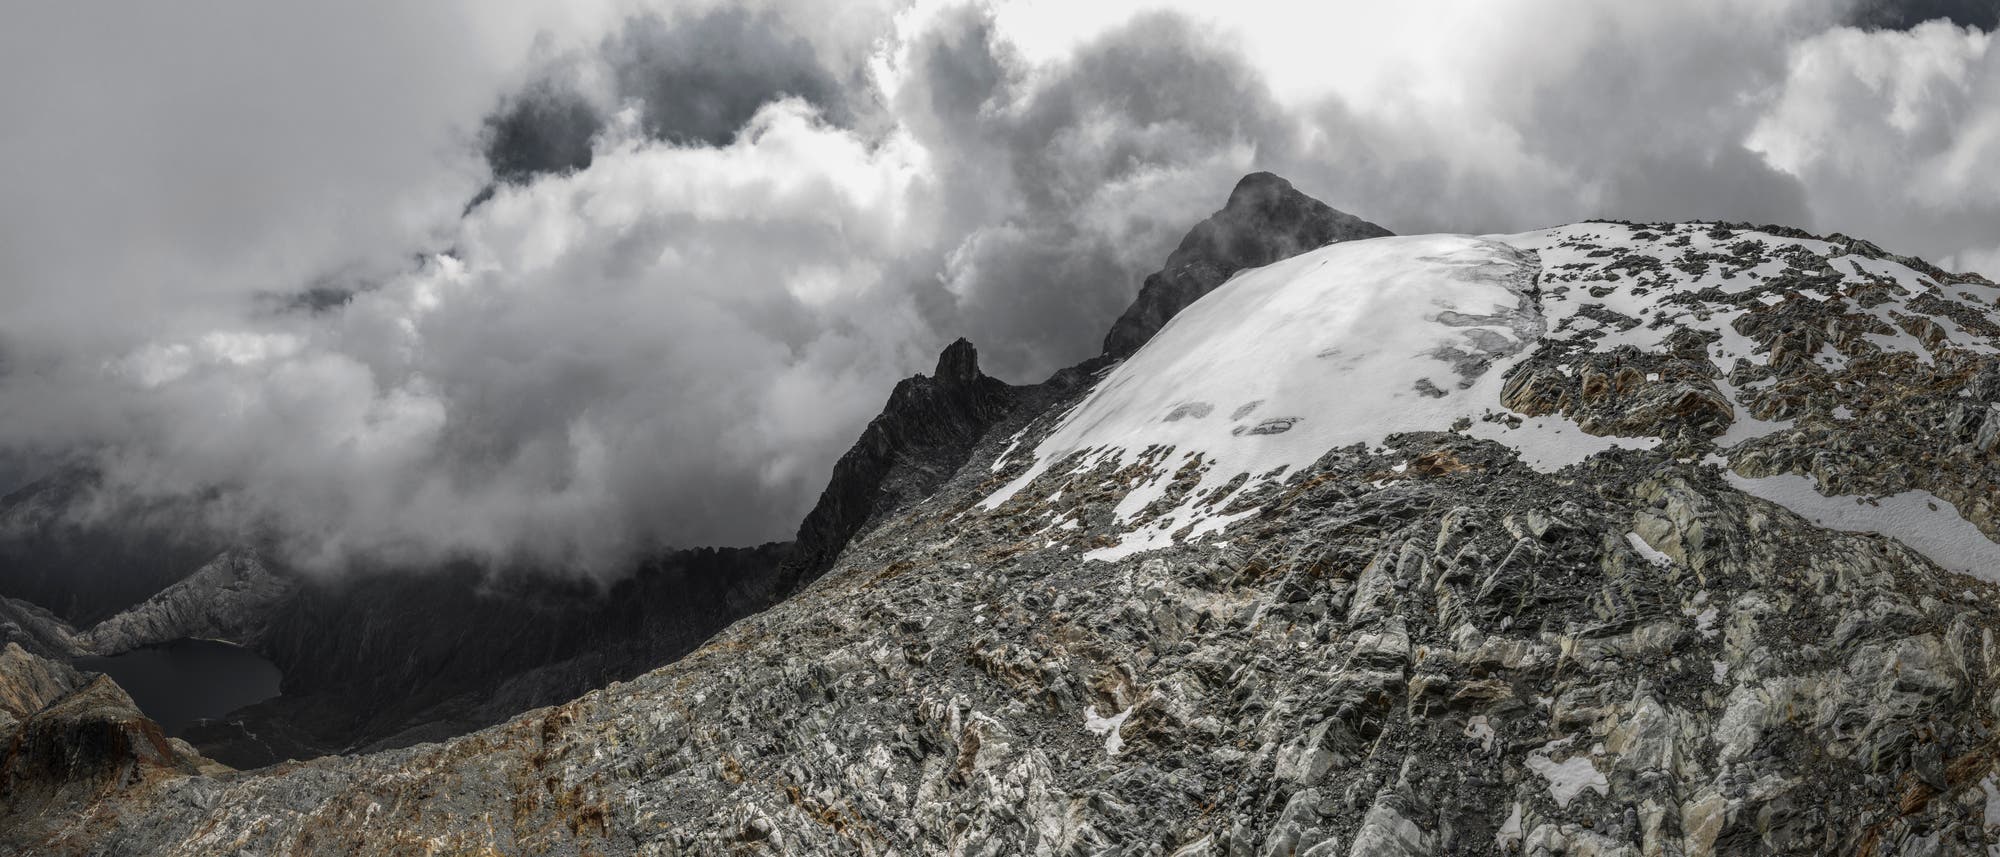 Archivbild des Humboldt-Gletschers in Venezuela, als dieser noch als Gletscher galt: eine kleine weiße Eisfläche in der rechten Bildmitte, umgeben von grauem Gestein. Im Hintergrund ist ein Berggipfel, der von weißen Wolken umgeben wird.